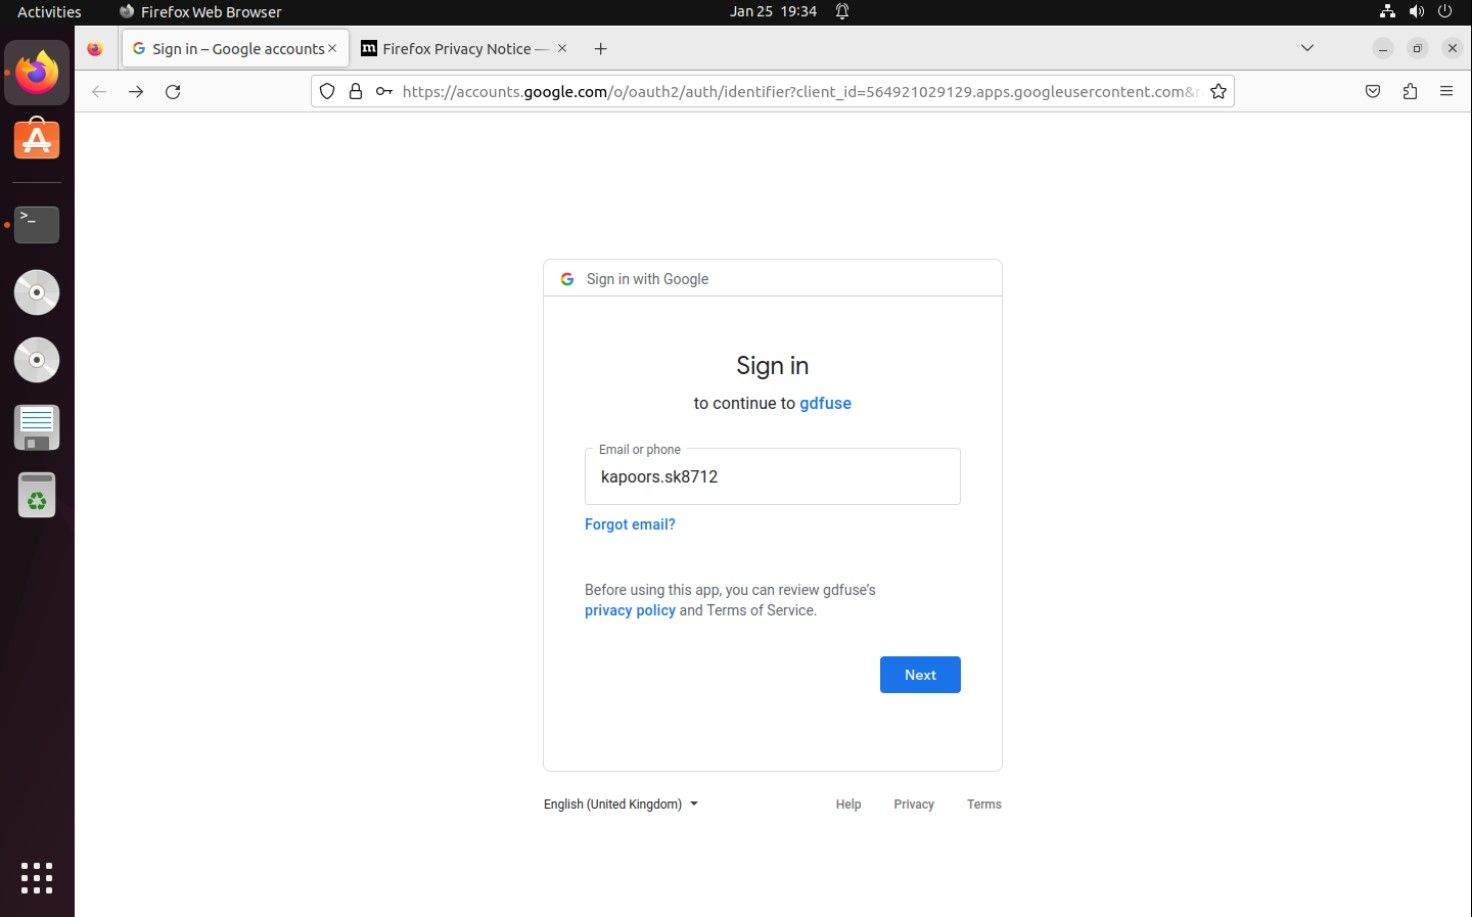 Gmail 的登录屏幕要求输入电子邮件地址